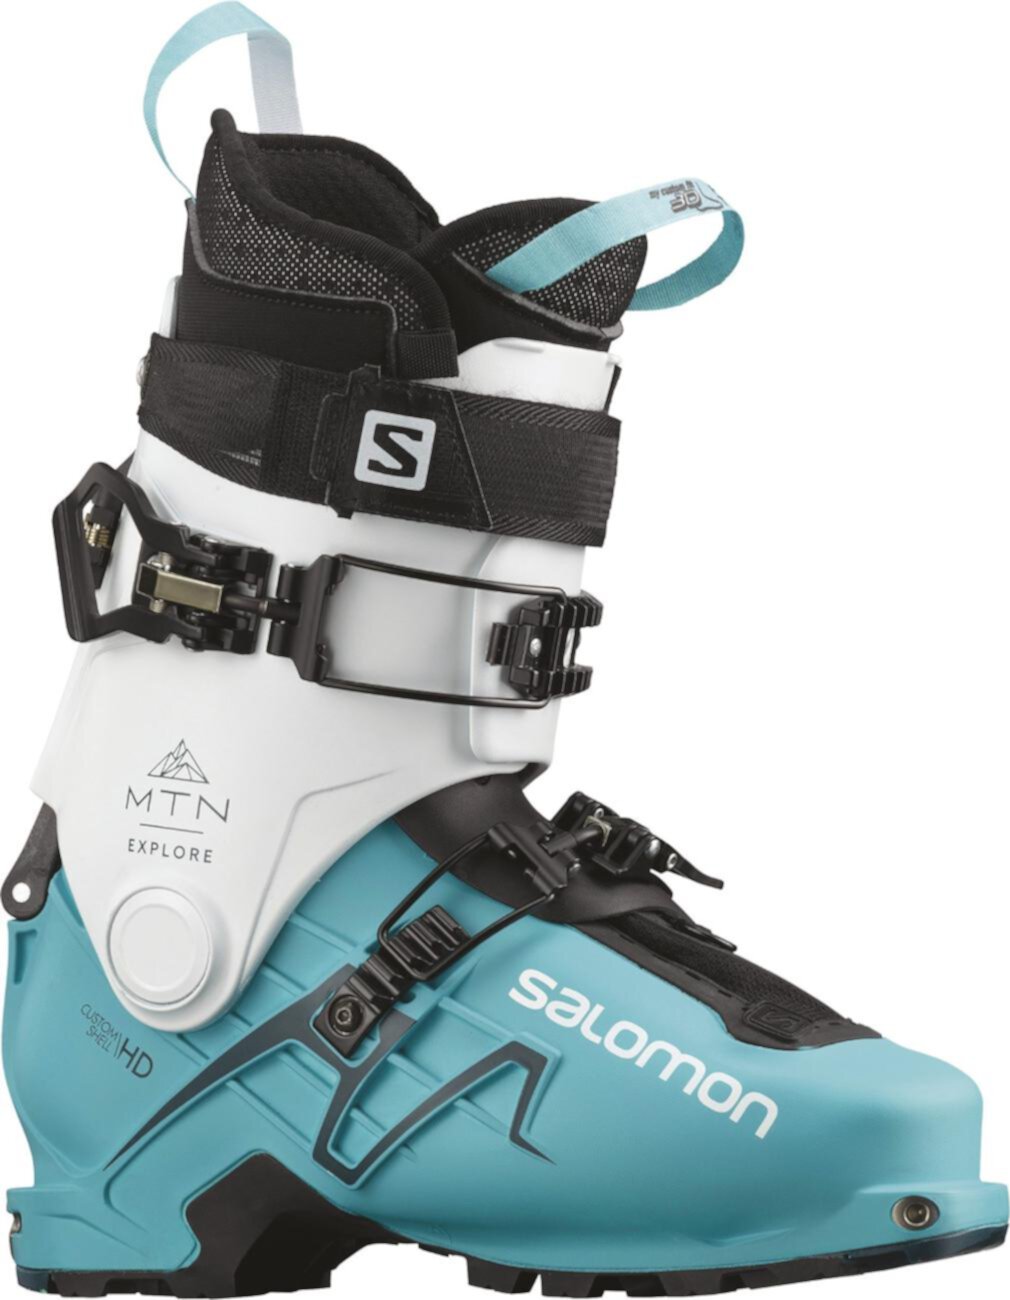 Горнолыжные ботинки MTN Explore Alpine Touring - Женские - 2021/2022 Salomon